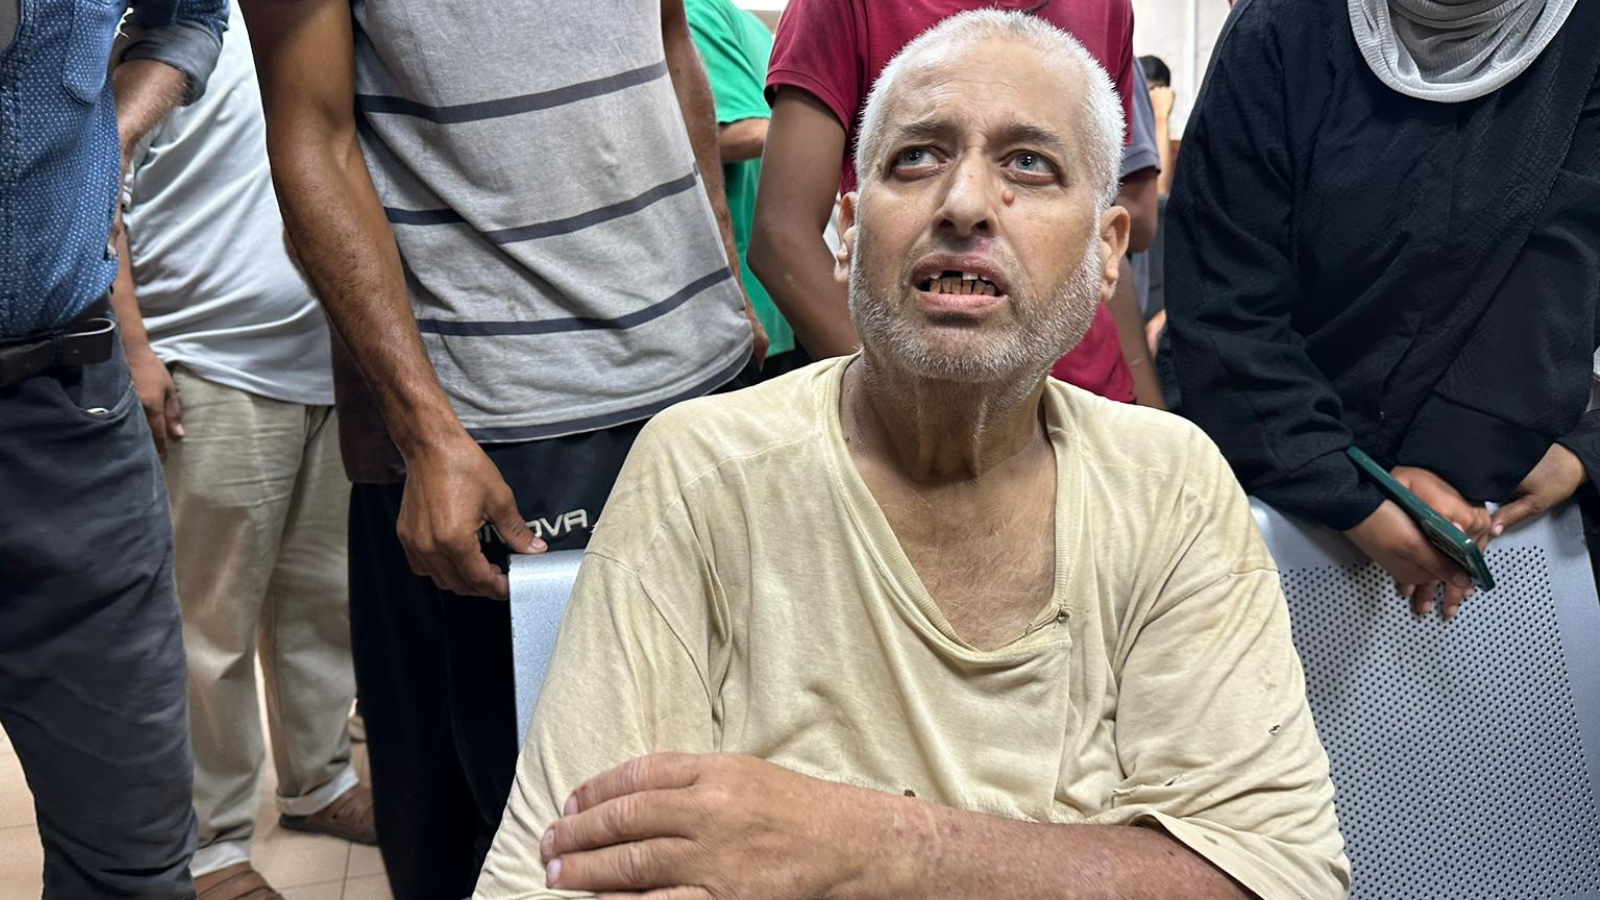 مُسن من غزة يروي لـ"إرم نيوز" تفاصيل تعذيبه في سجن "سدي تيمان" الإسرائيلي